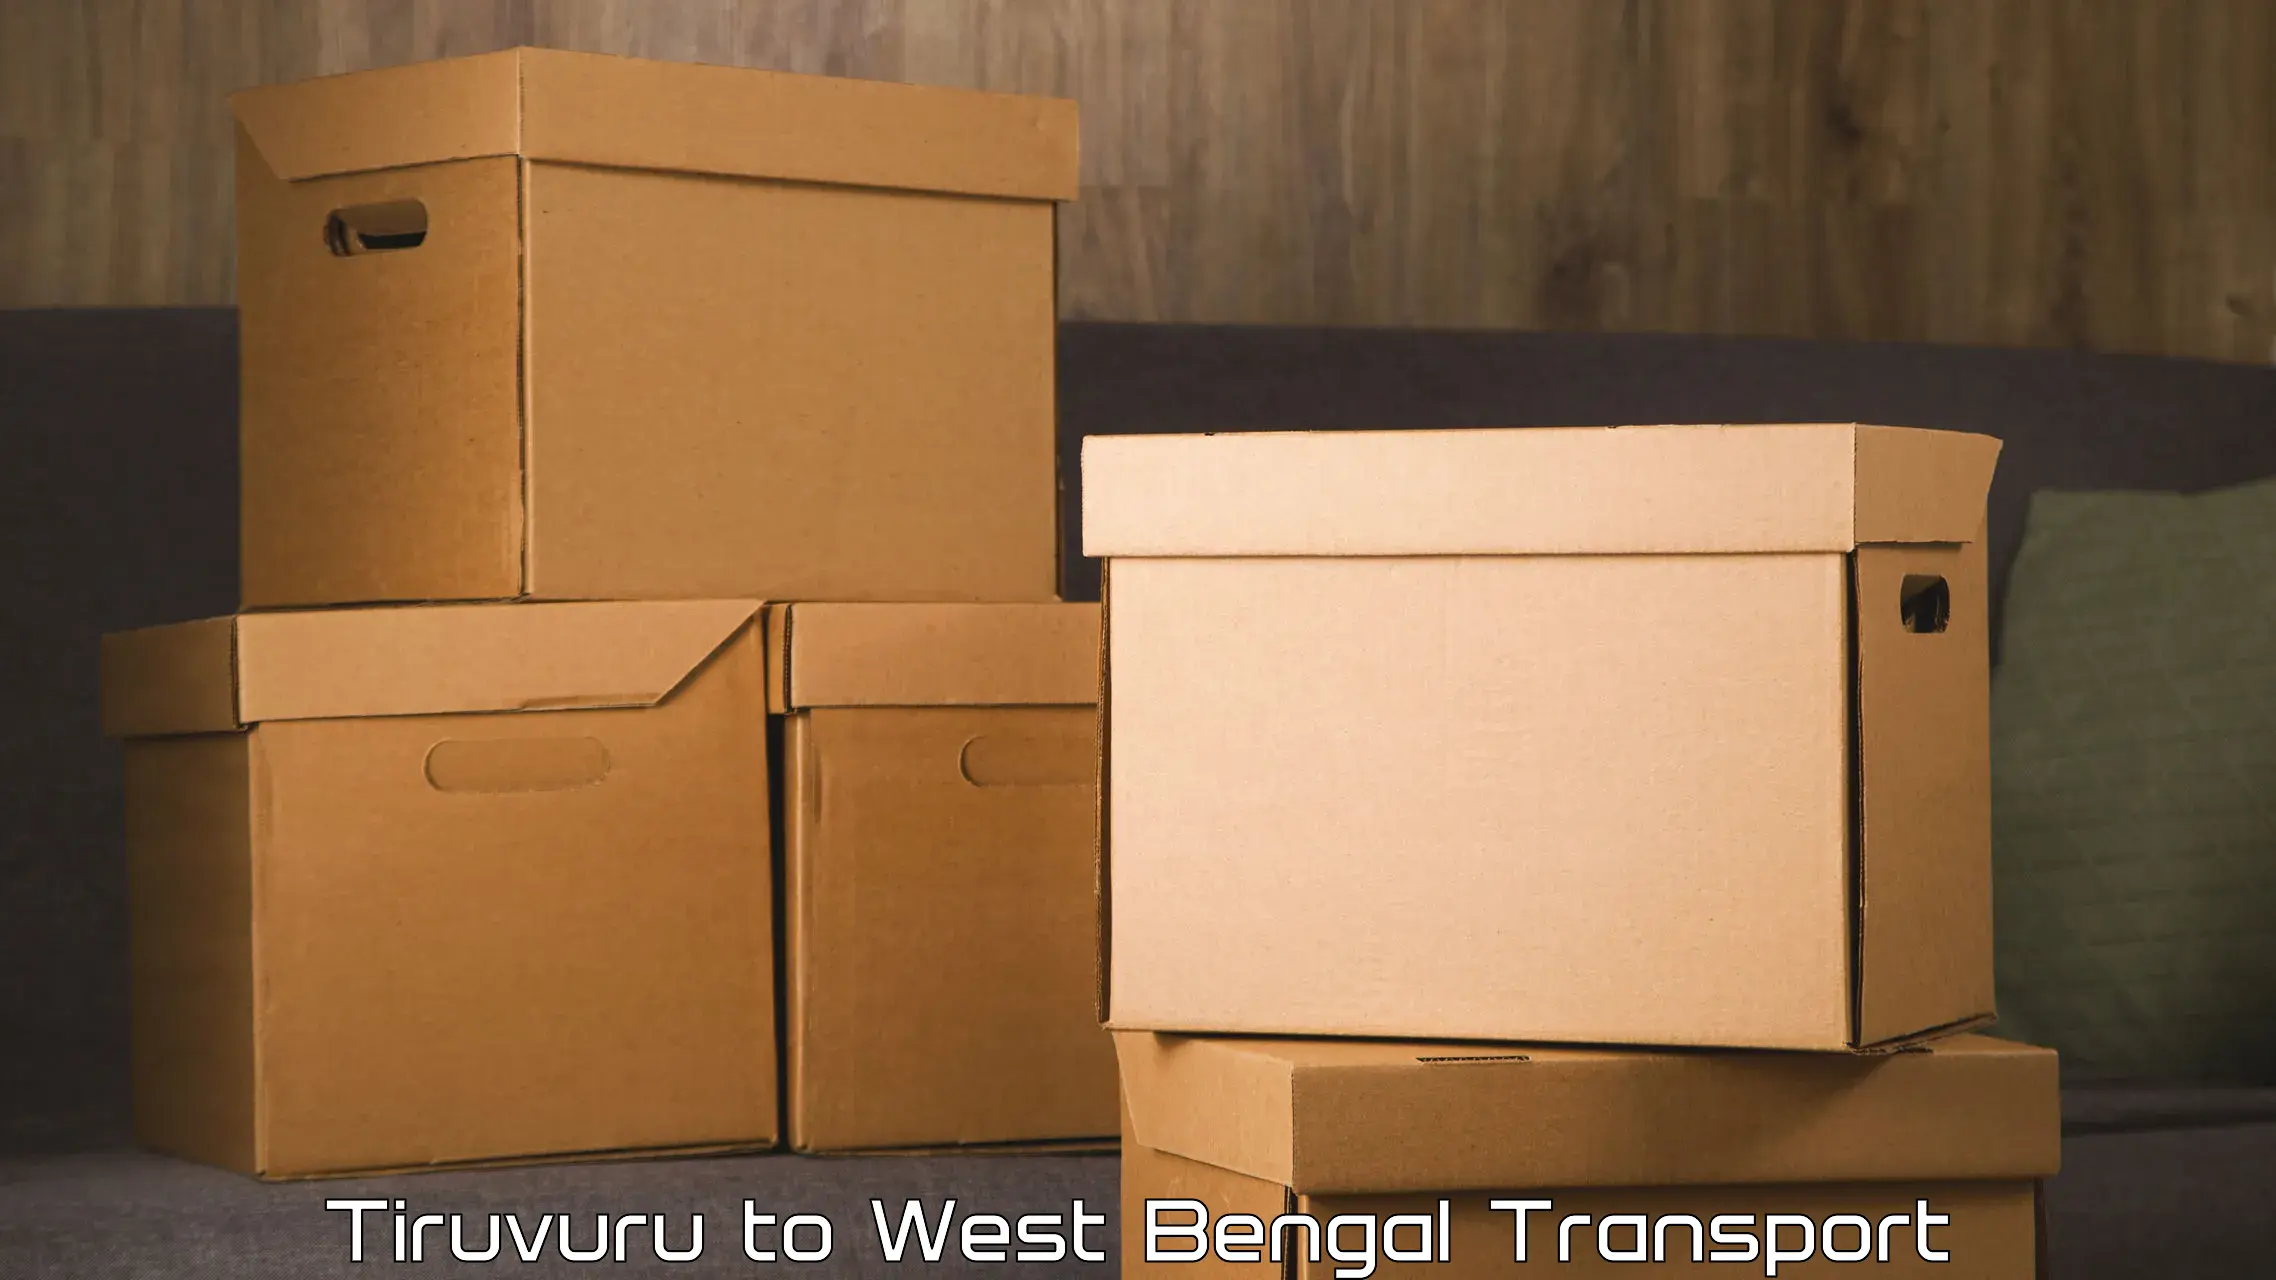 Furniture transport service Tiruvuru to Siliguri